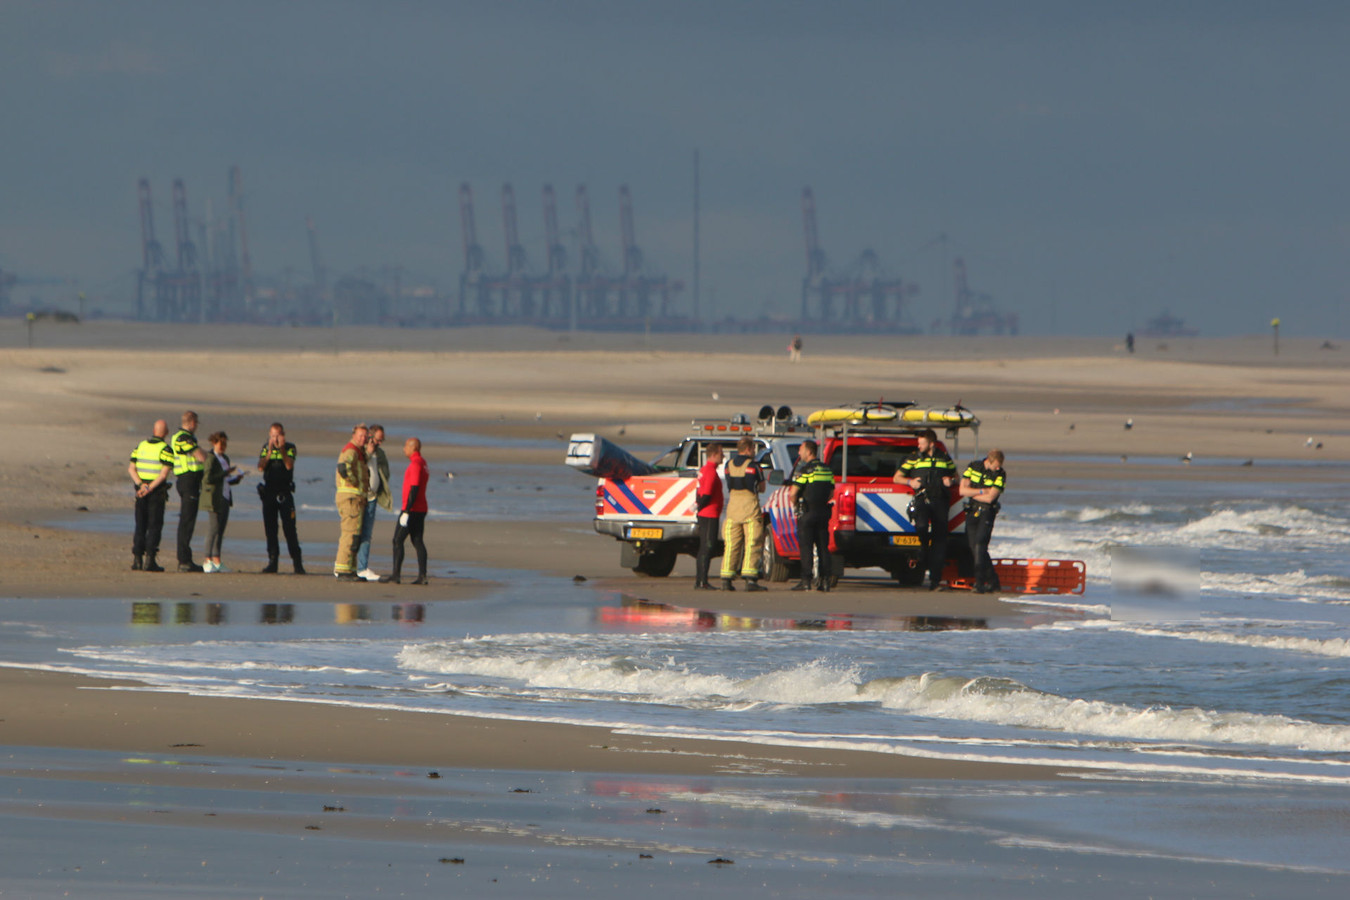 Dode Op Strand In Kijkduin Is 25-Jarige Marek Die Zondag Vermist Raakte |  Foto | Ad.Nl